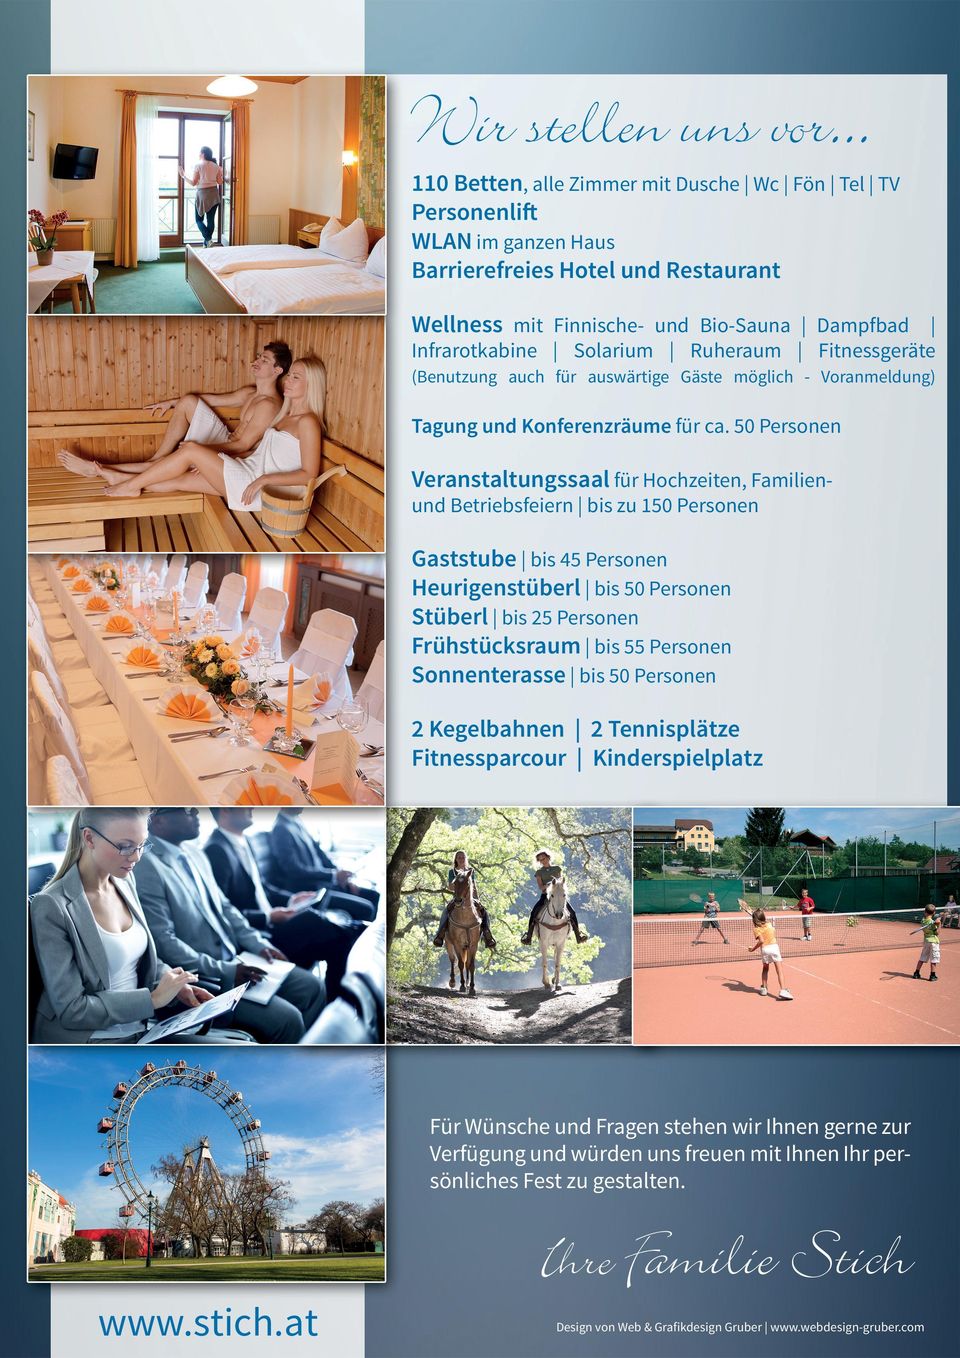 Ruheraum Fitnessgeräte (Benutzung auch für auswärtige Gäste möglich - Voranmeldung) Tagung und Konferenzräume für ca.